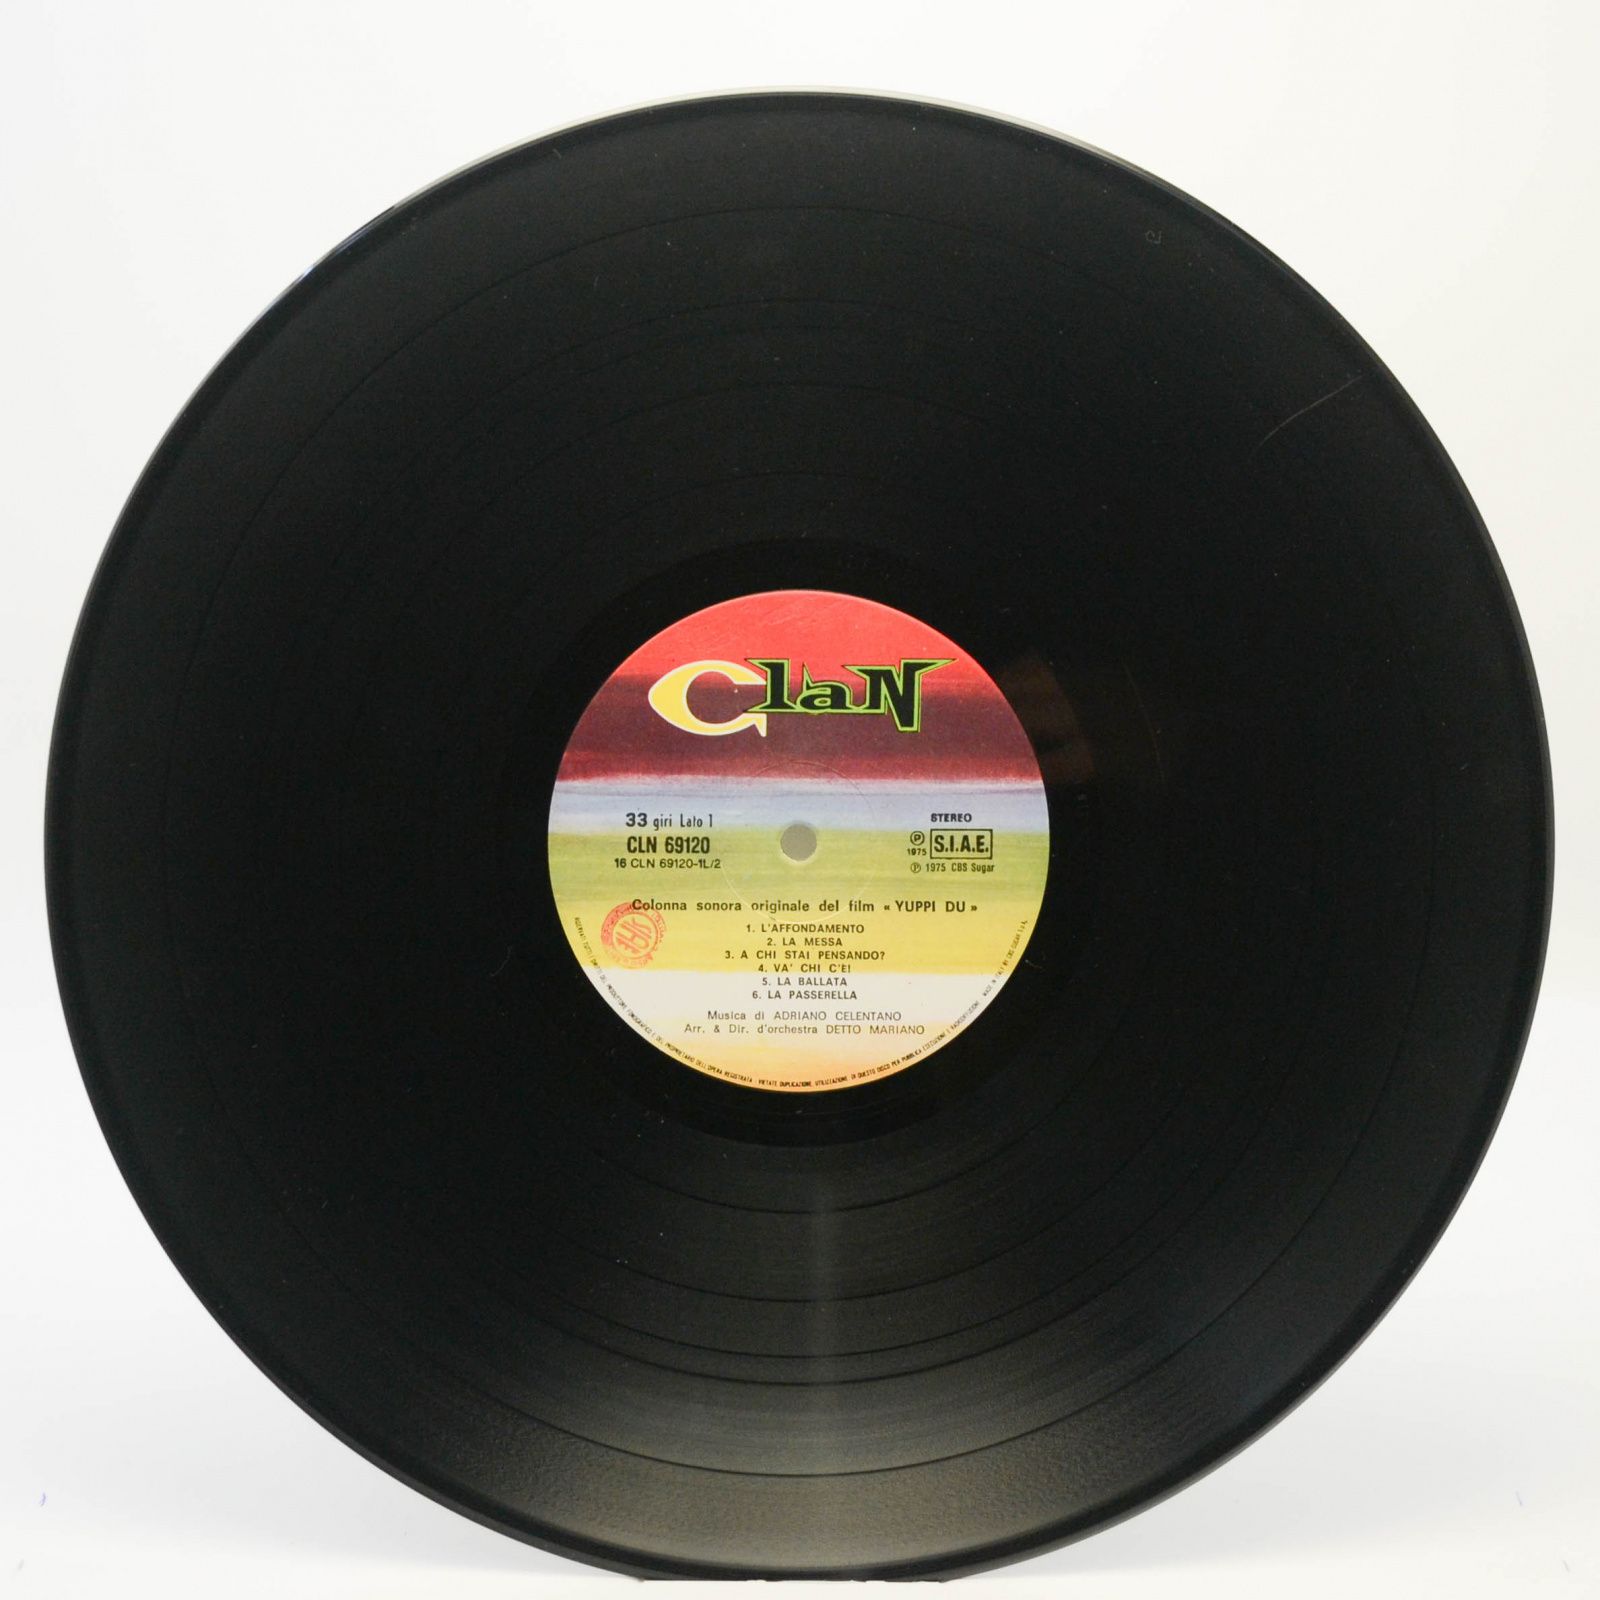 Adriano Celentano — Yuppi Du (Colonna Sonora Originale) (1-st, Italy, Clan), 1975